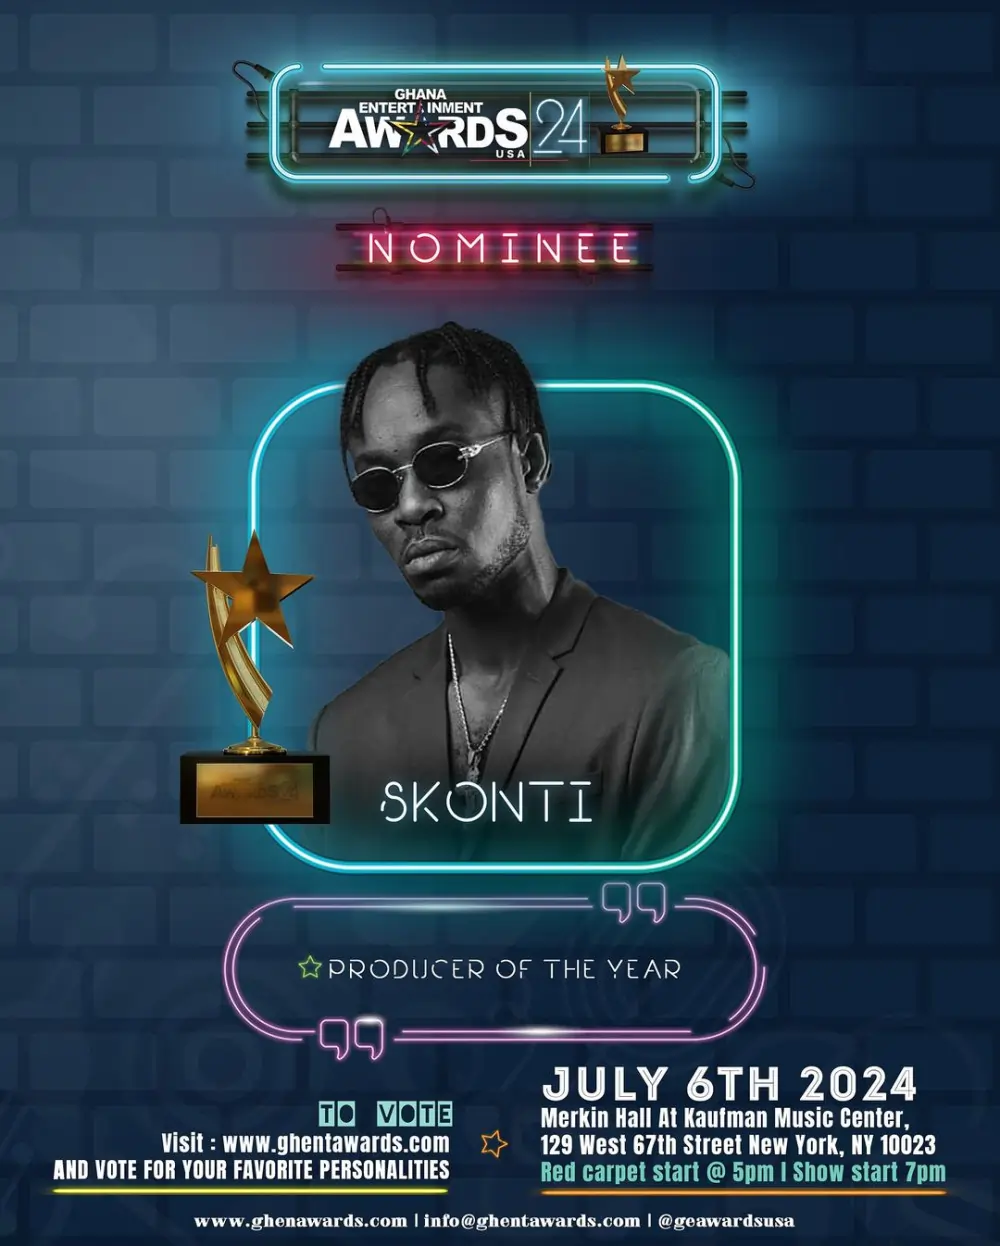 Skonti earns nomination at Ghana Entertainment Awards USA 2024